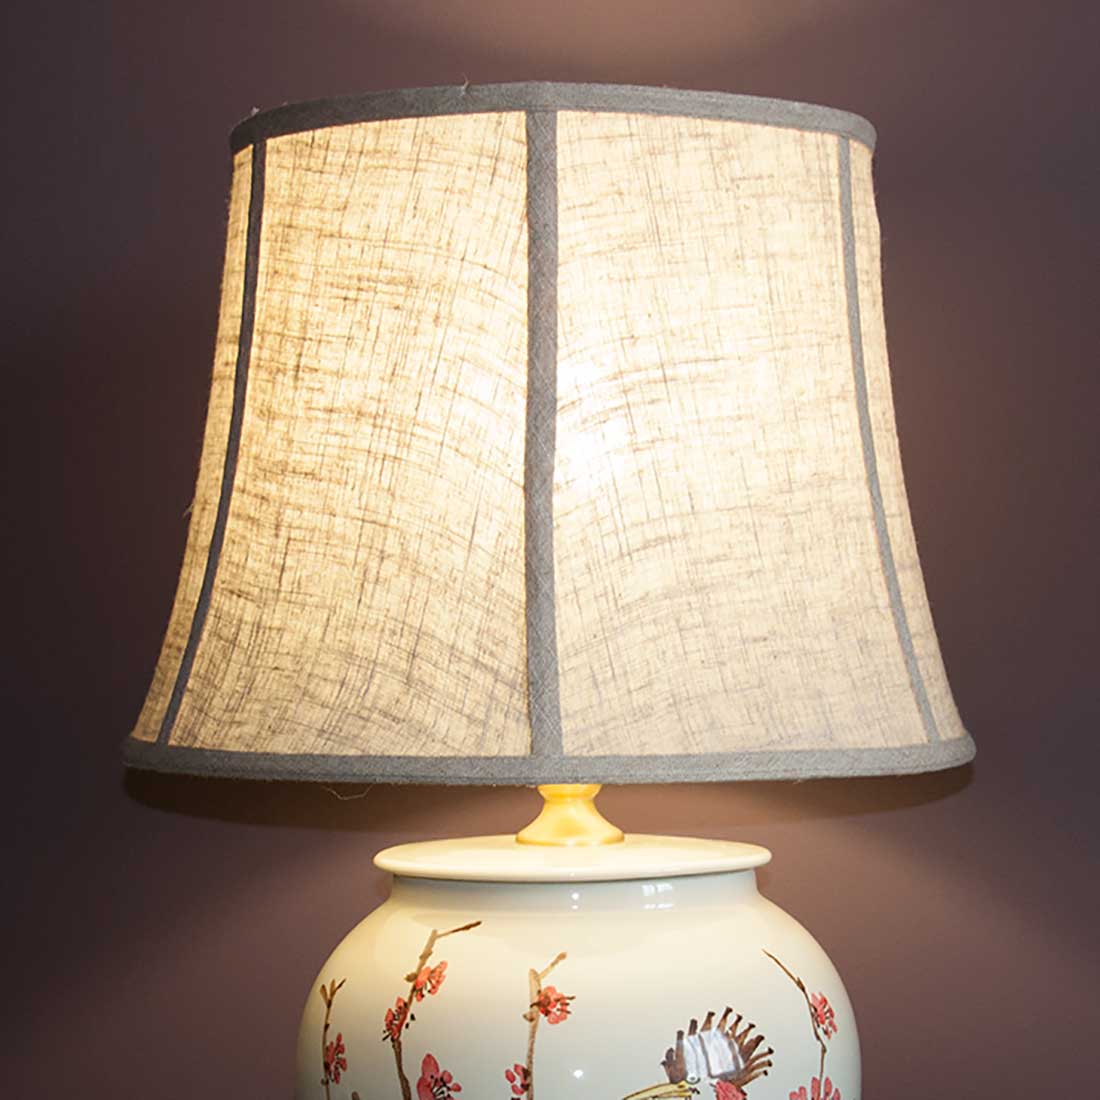 Лампа настольная, фарфоровая "Удод на ветвях дикой сливы (мэйхуа)" купить в интернет-студии декора / шоурум | ChinaHouse.Studio